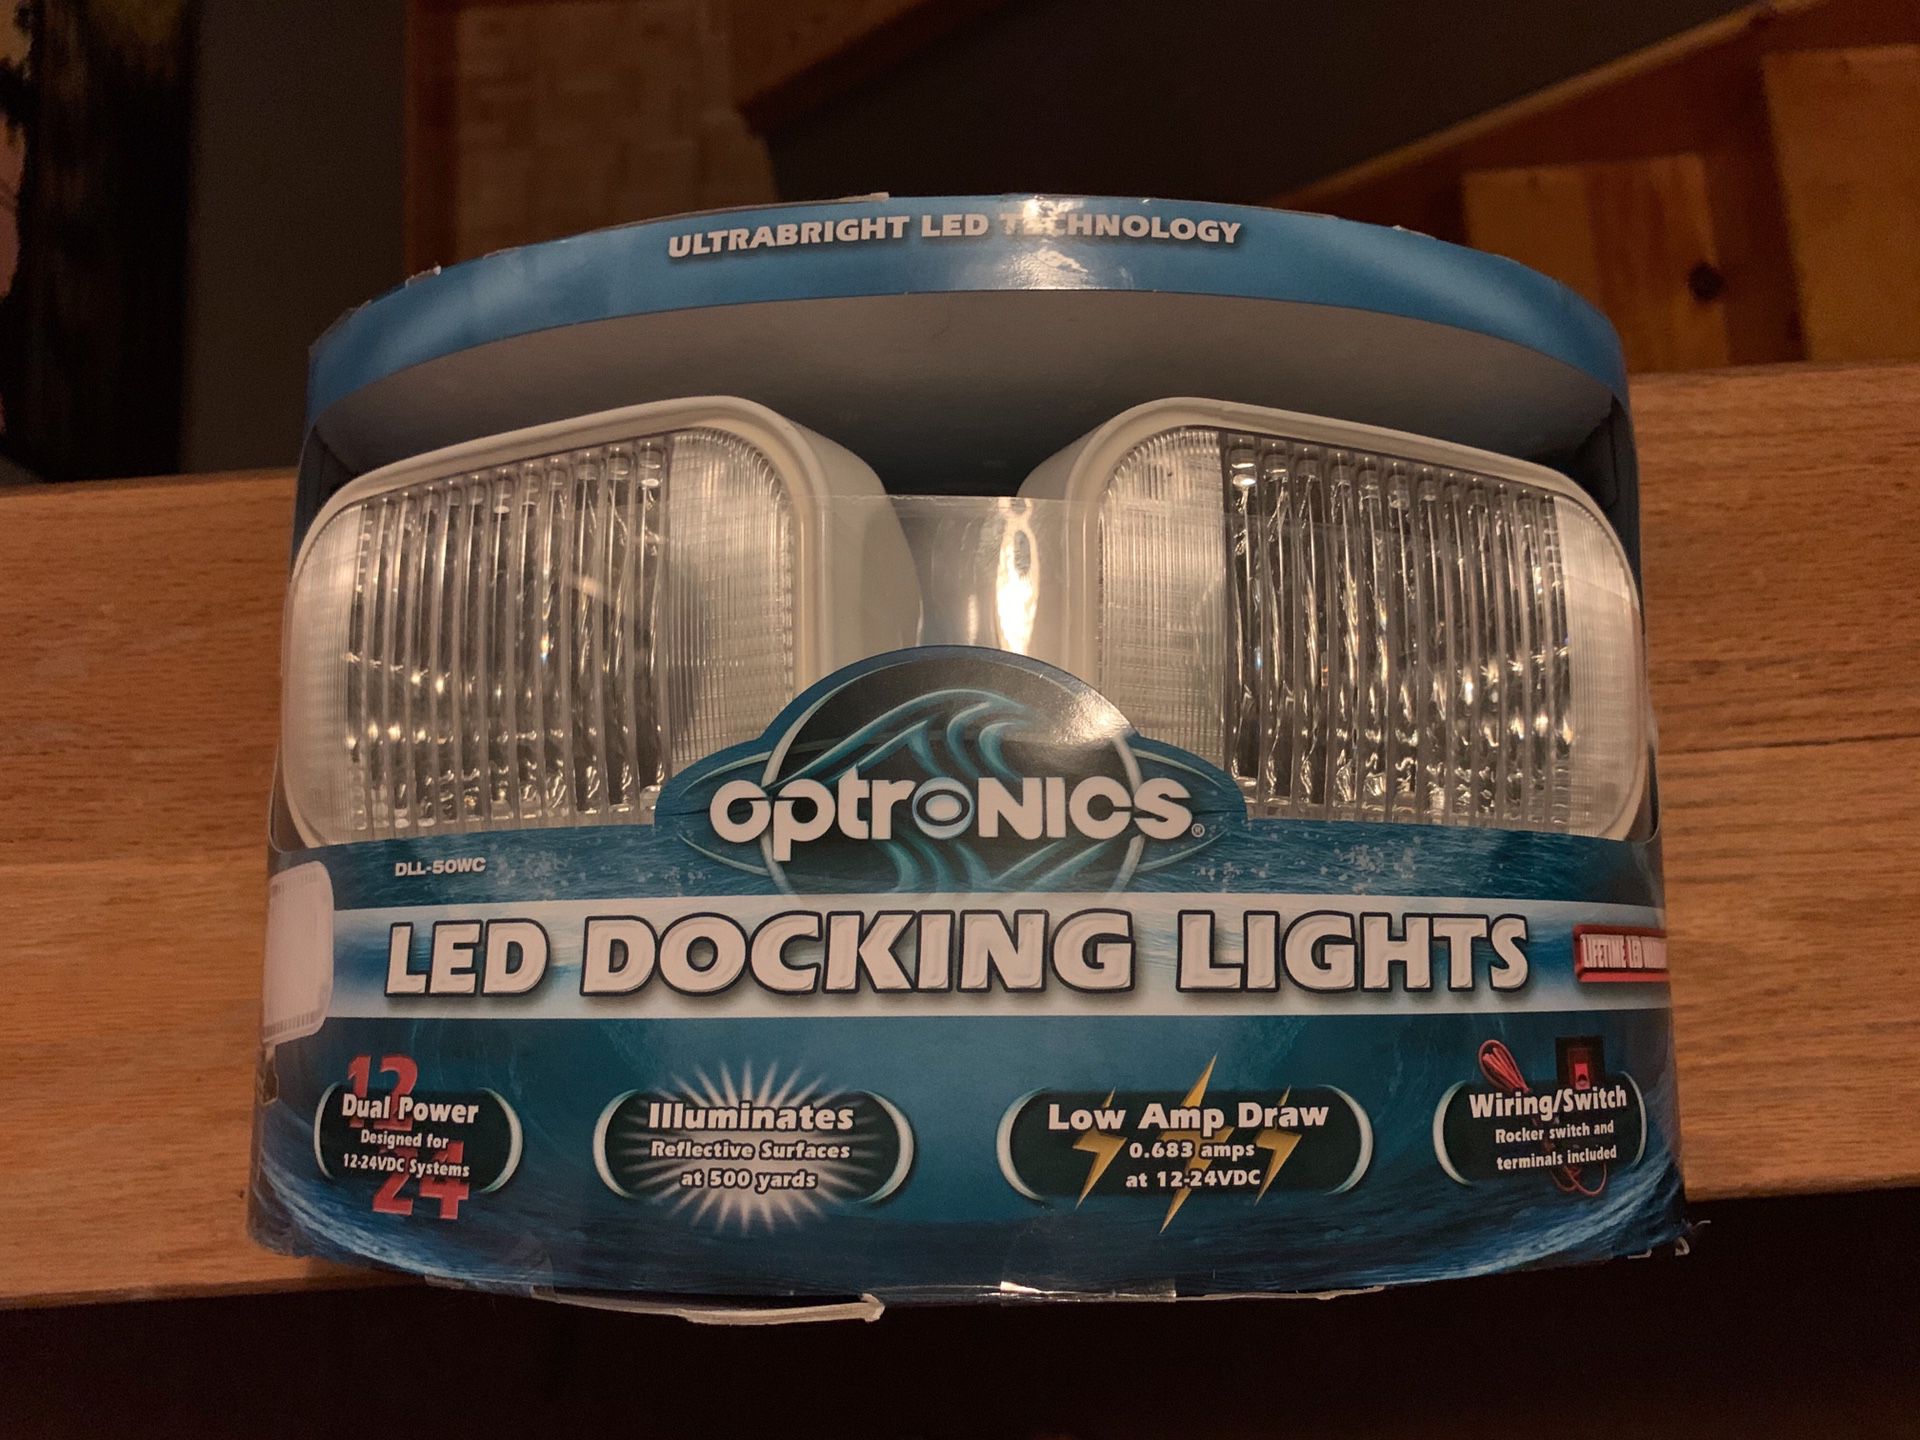 LED docking lights